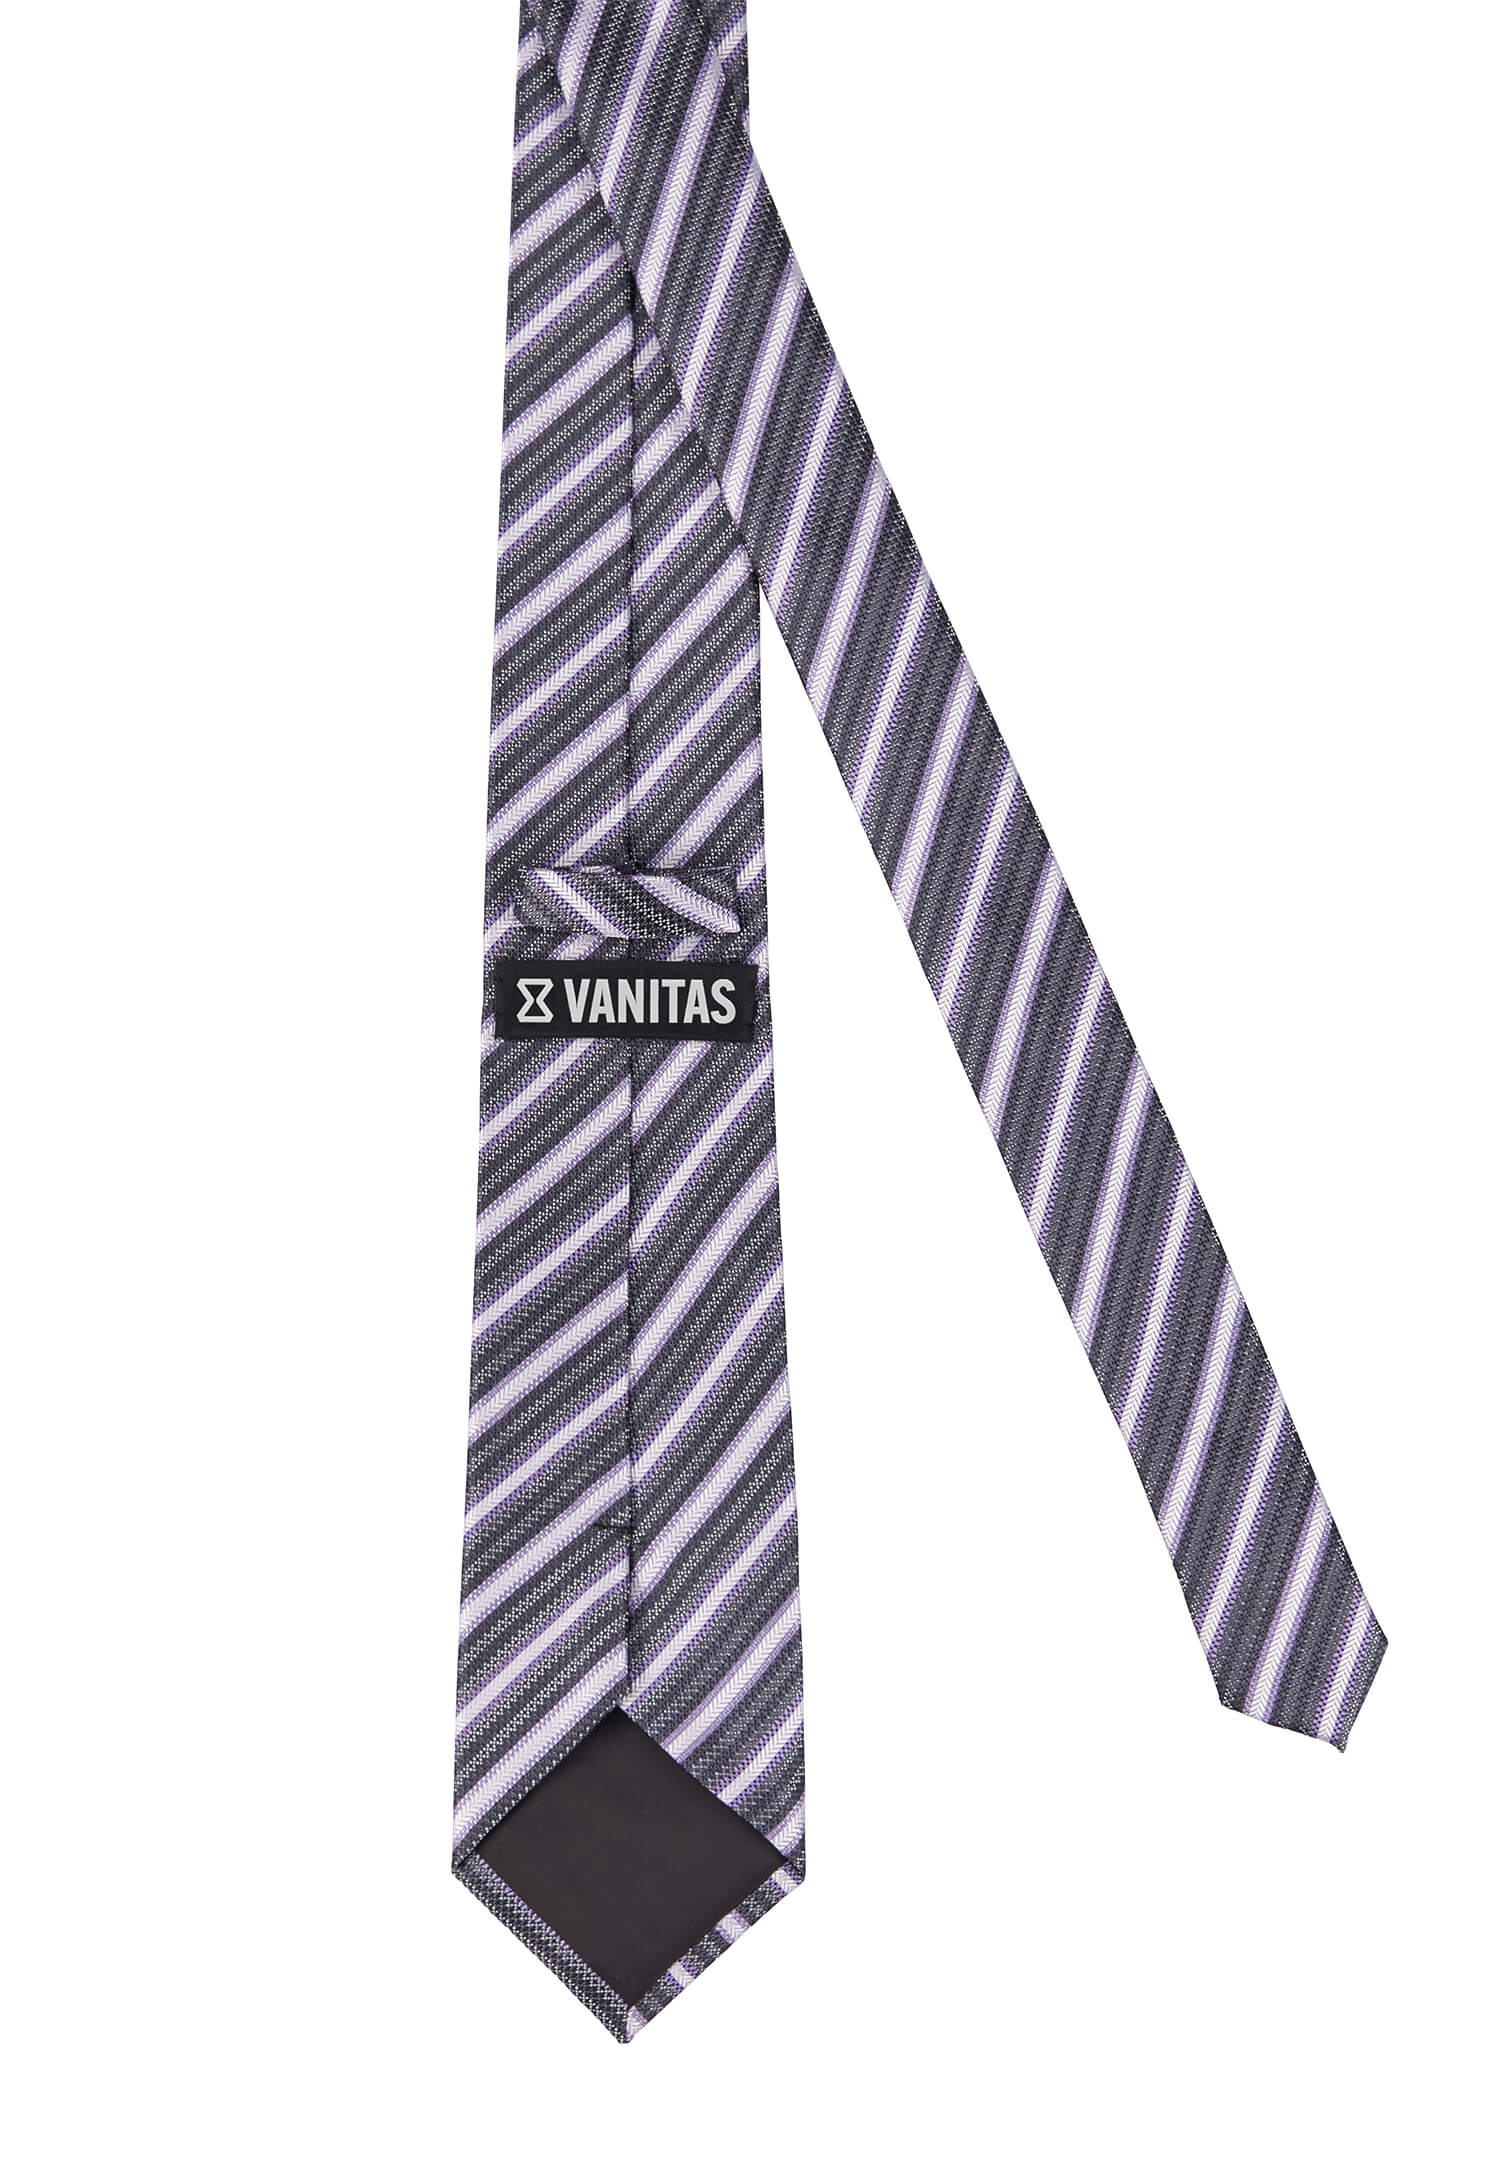 Krawatte modische Streifen flieder/grau/anthrazit